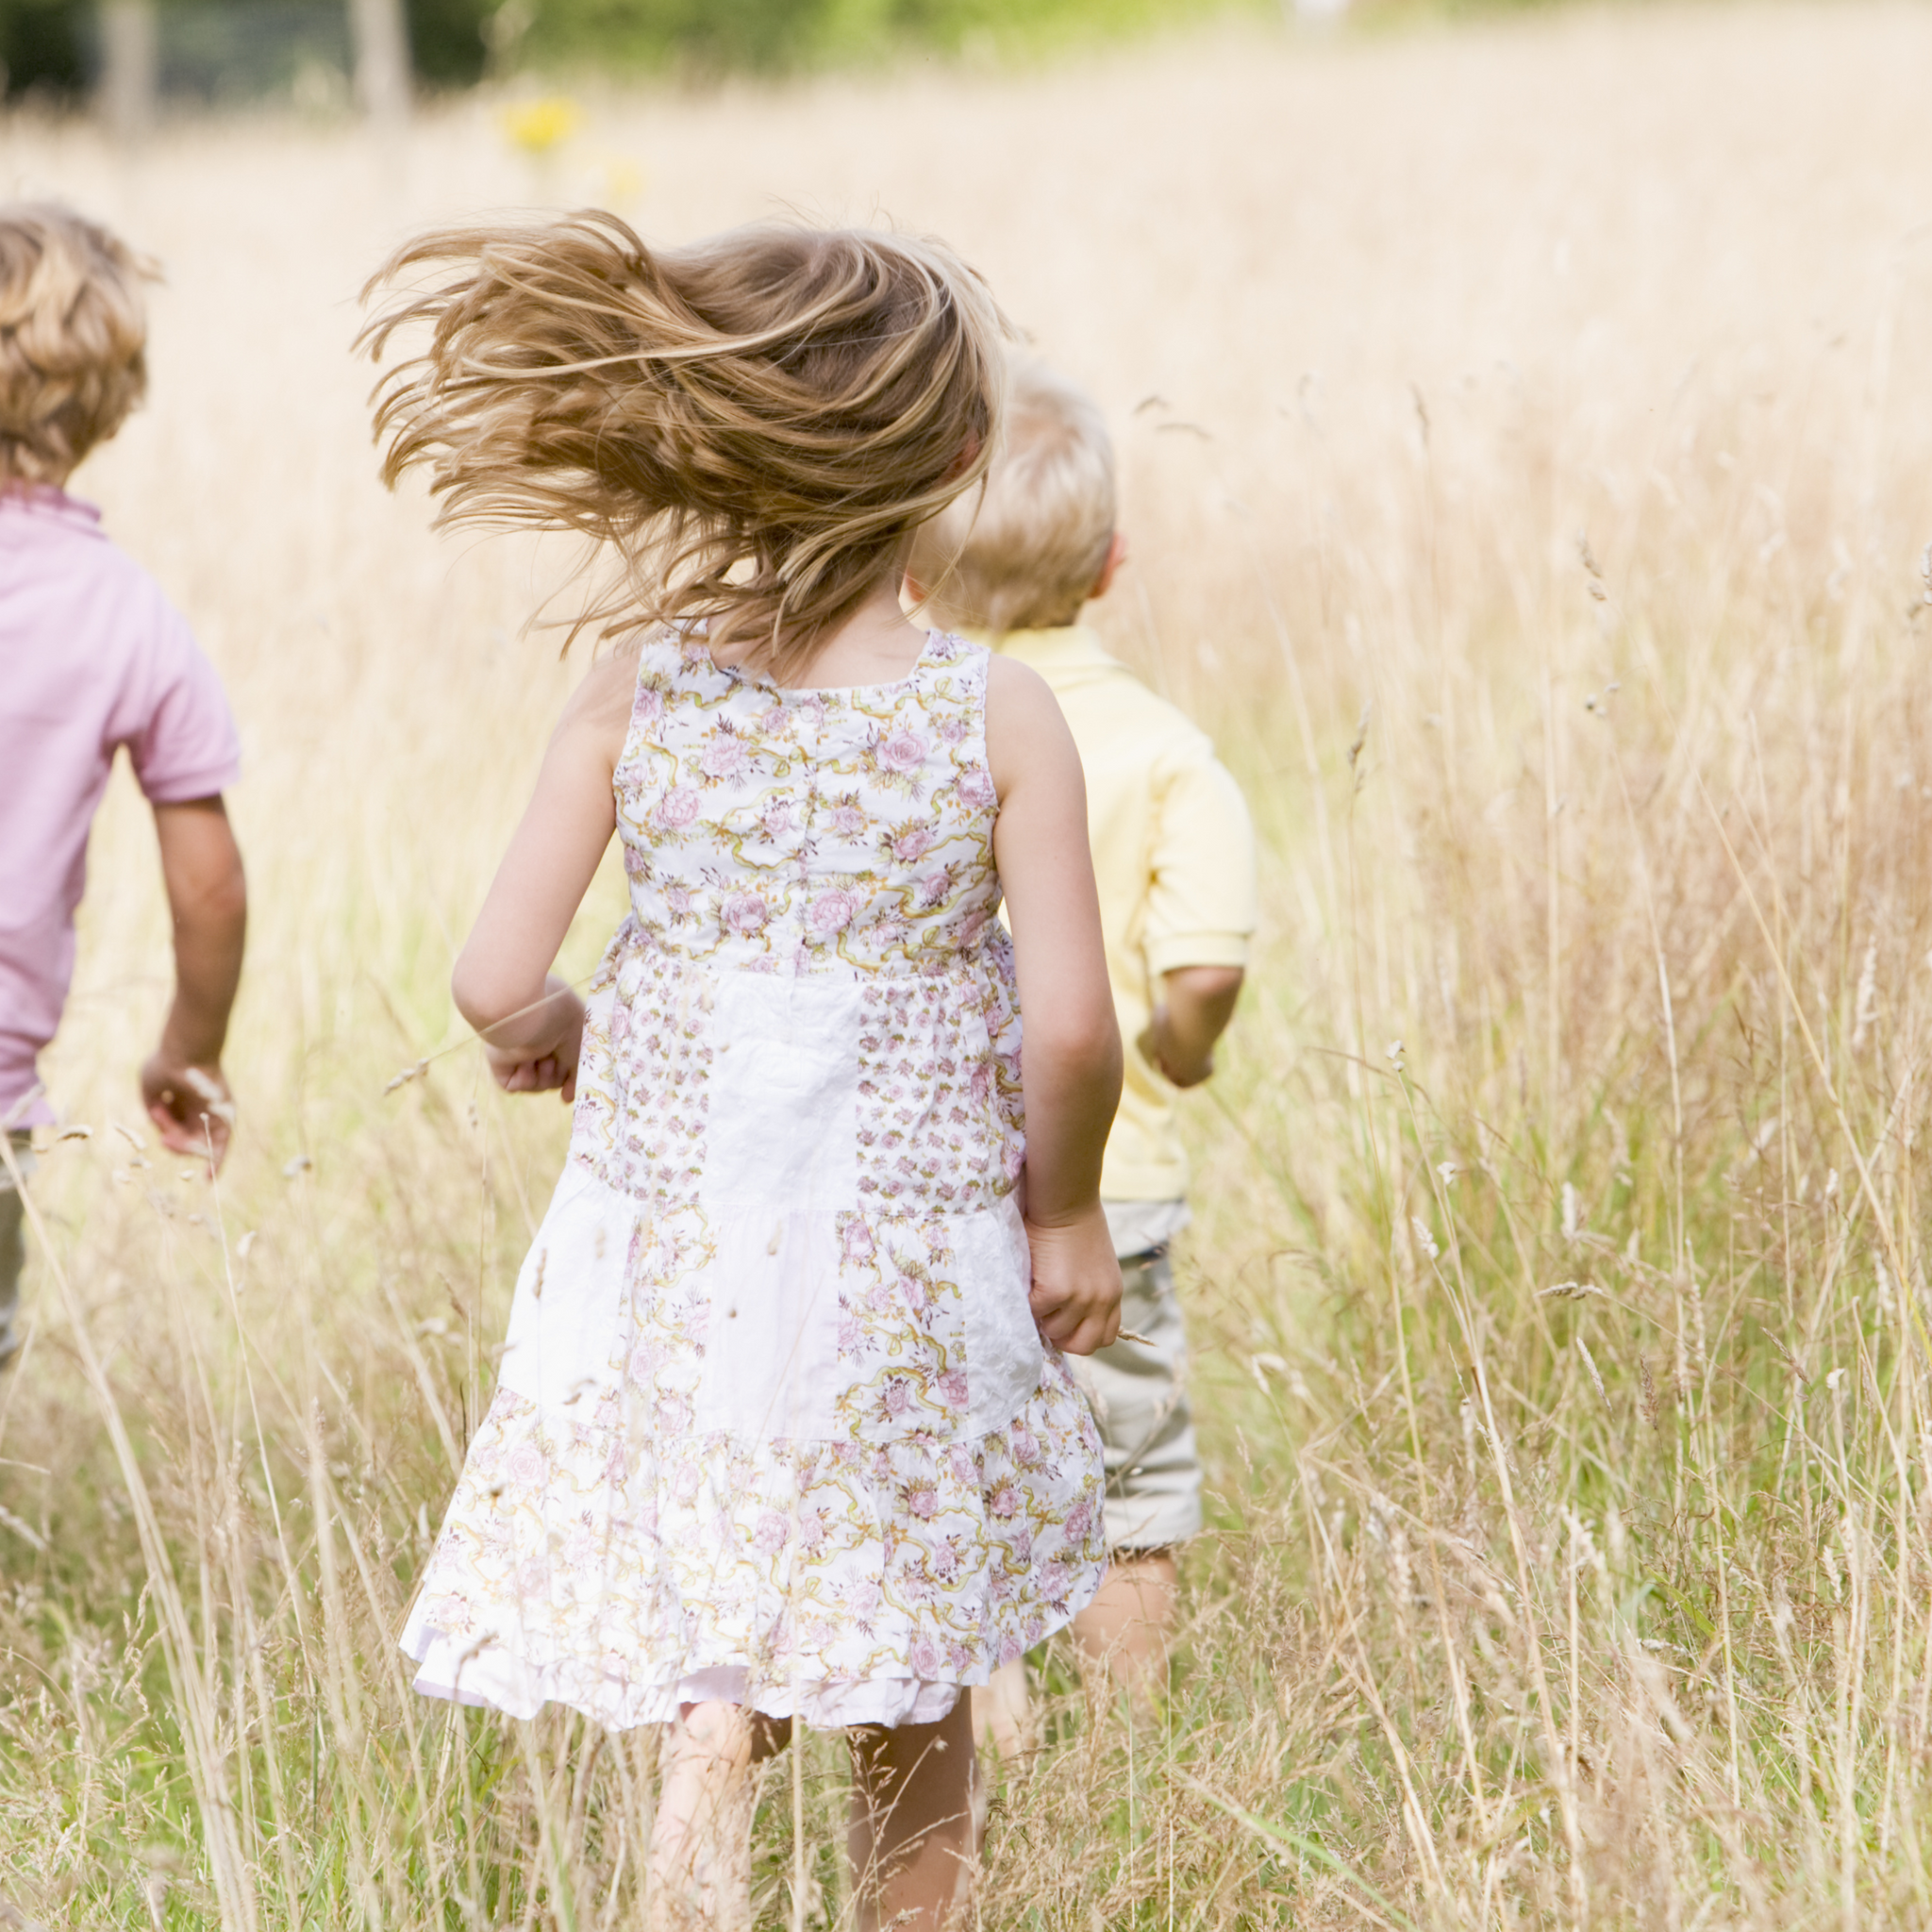 children running on meadows